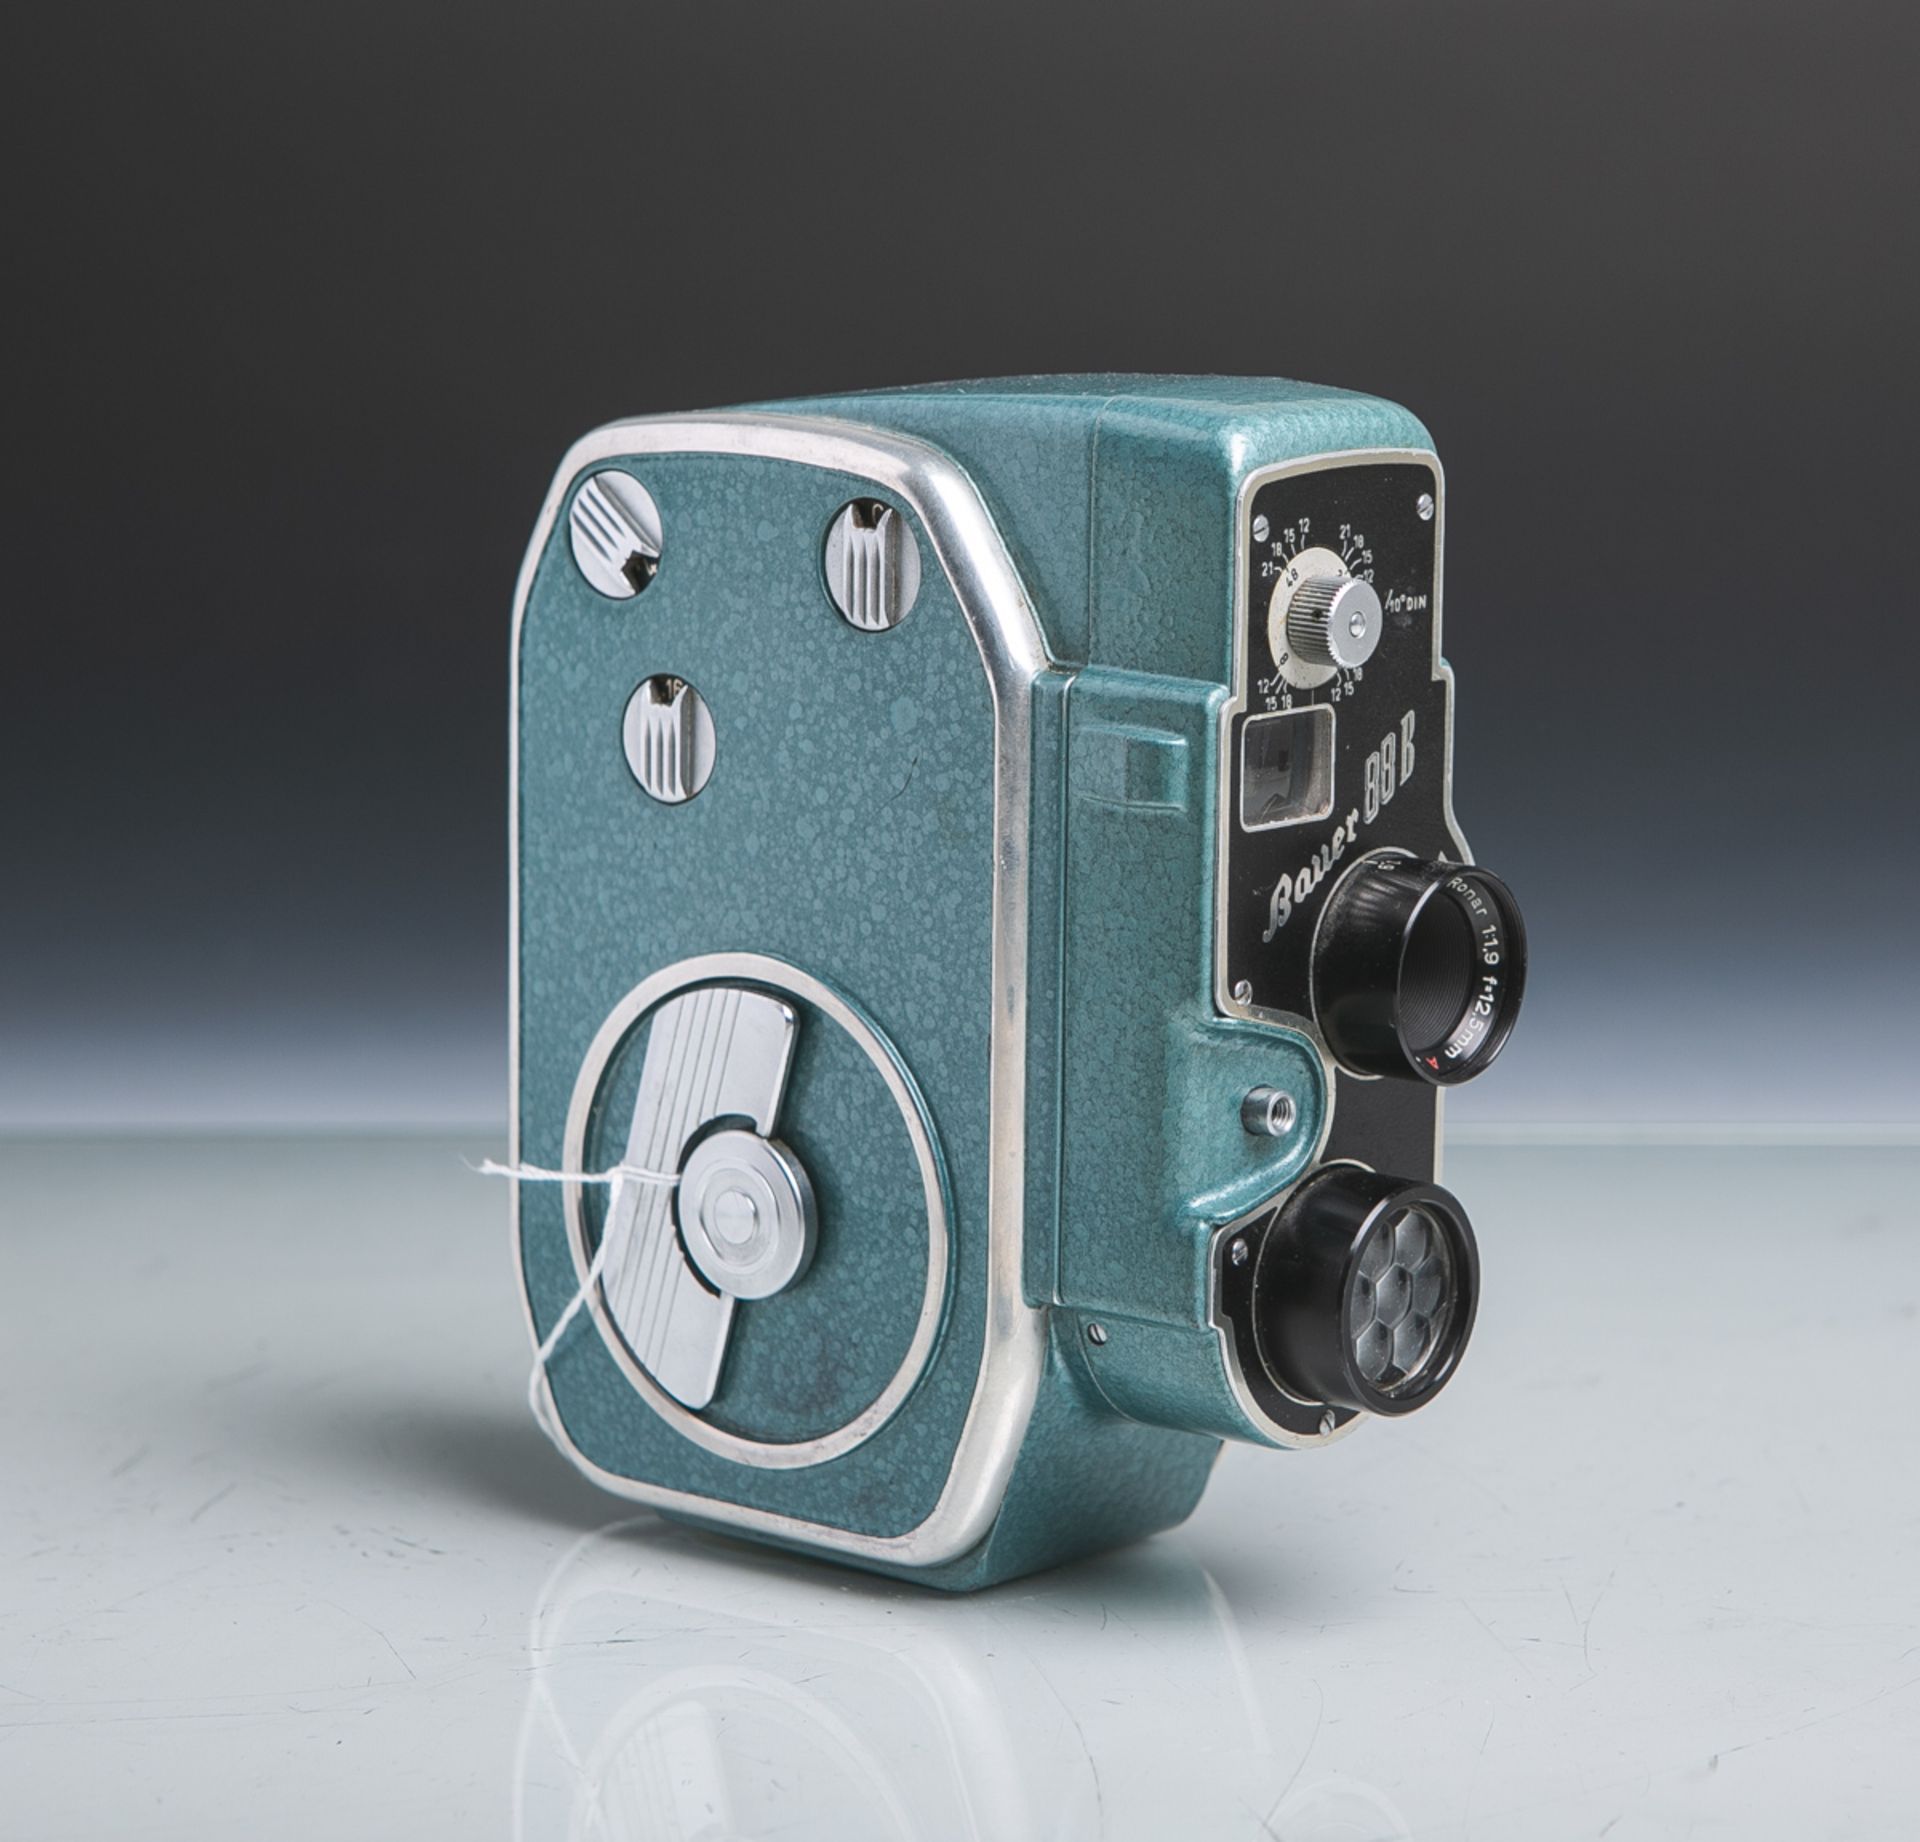 Filmkamera "Bauer 88 B" von Eugen Bauer GmbH (Bj. 1954-1960), Format 8 mm, Sucher